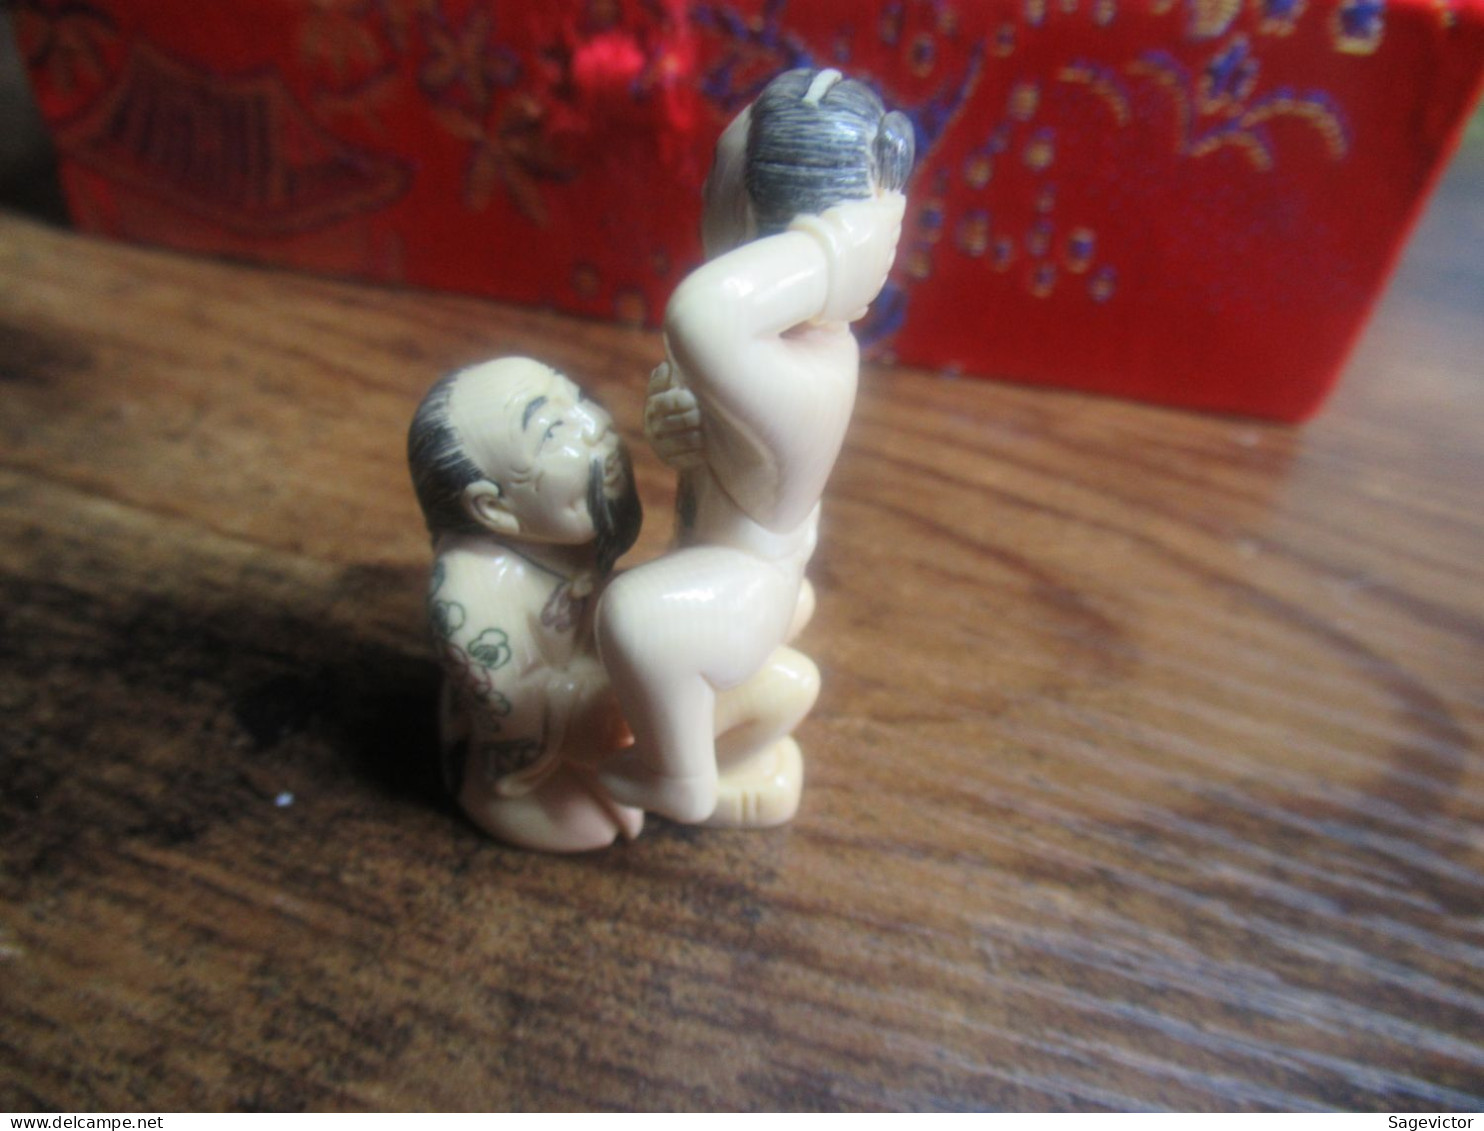 Coffret chinois + 6 statuettes érotiques en ivoire